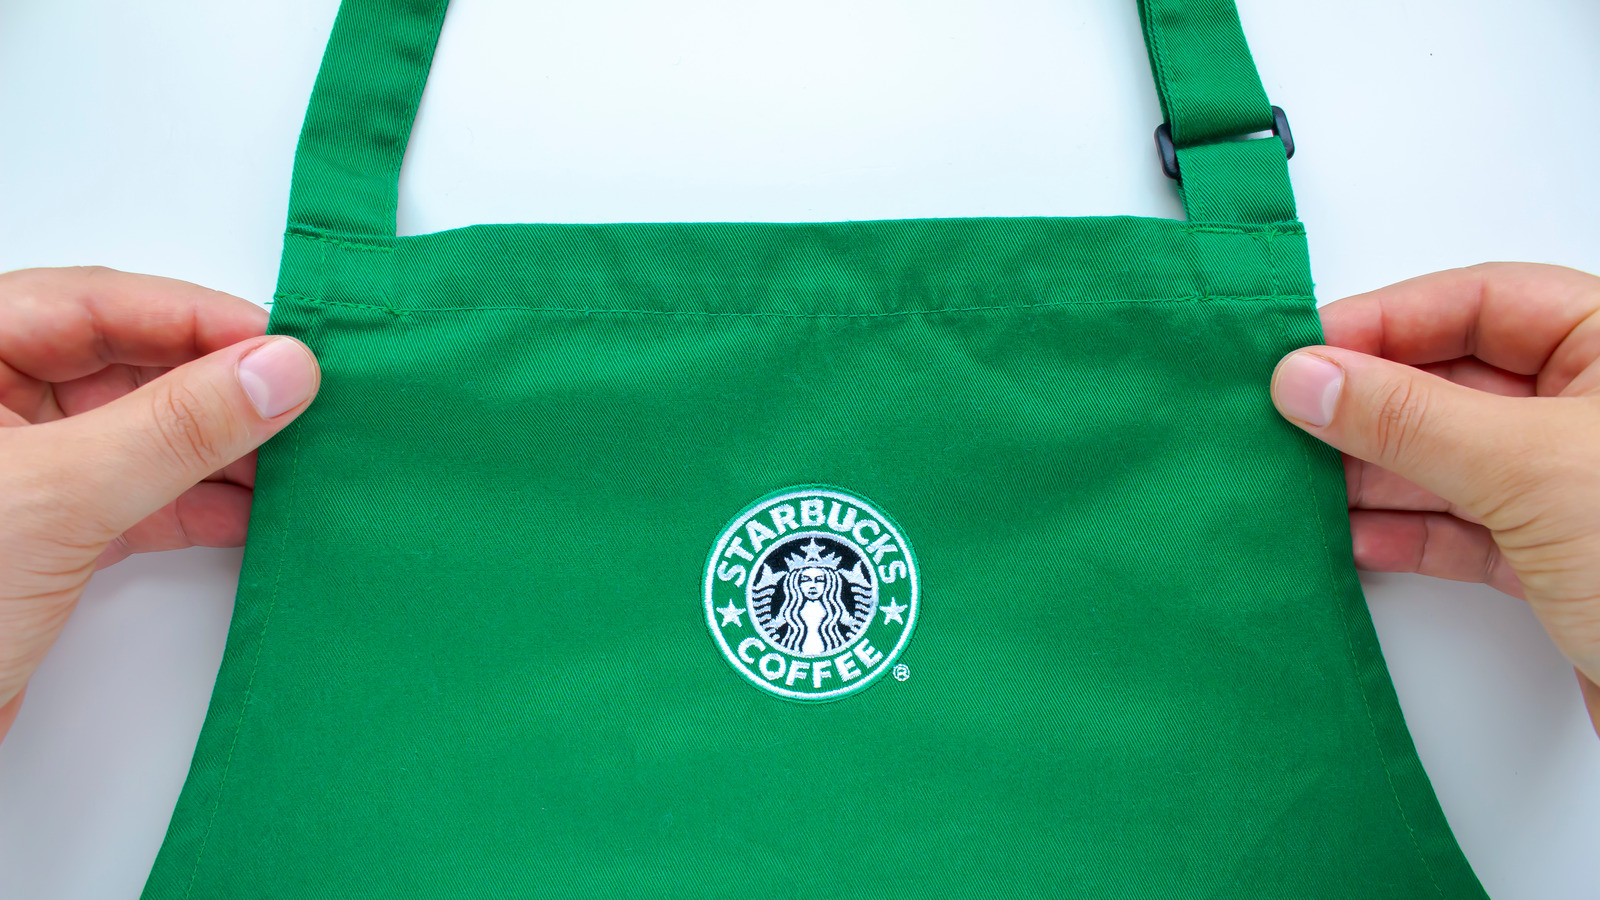 ¿Qué significan los delantales de Starbucks en diferentes colores?